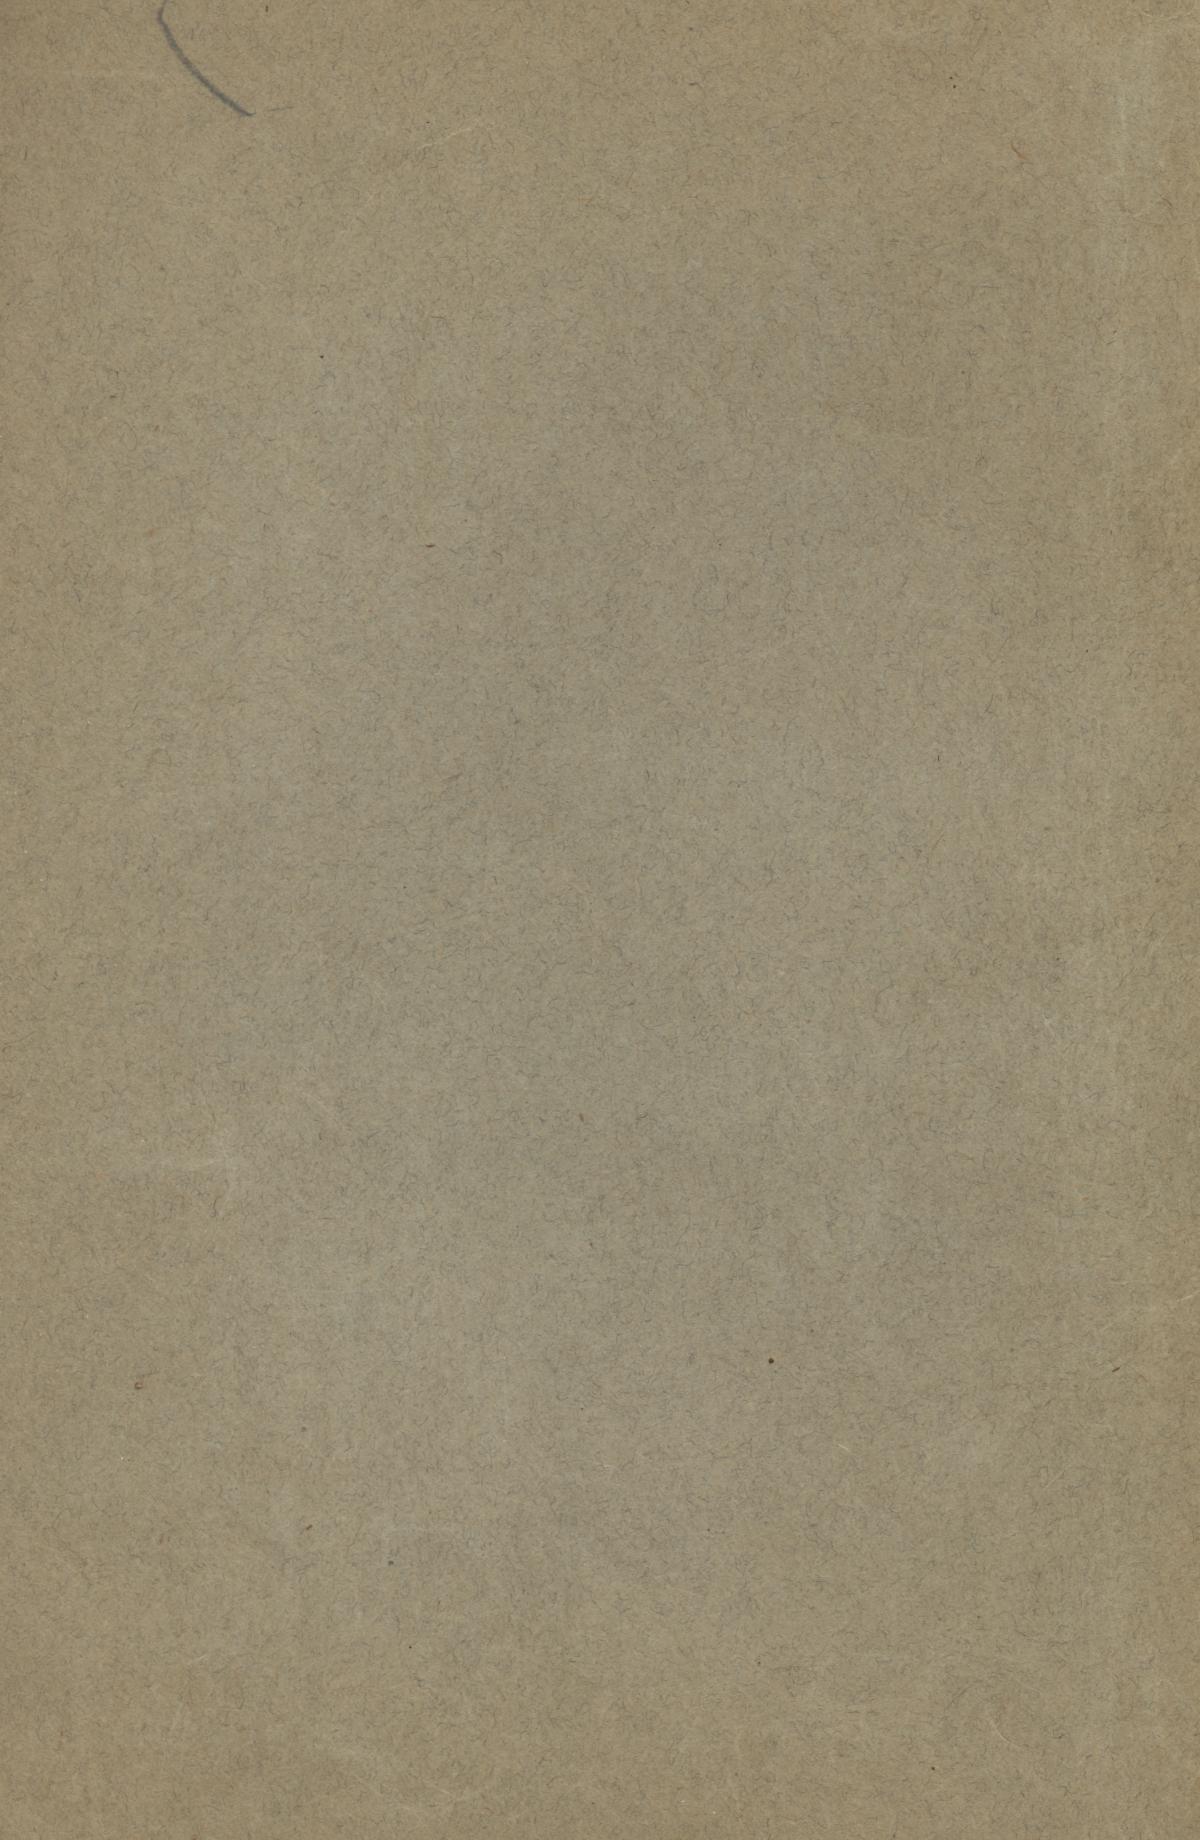 Catalog of Daniel Baker College, 1917-1918
                                                
                                                    Back Cover
                                                